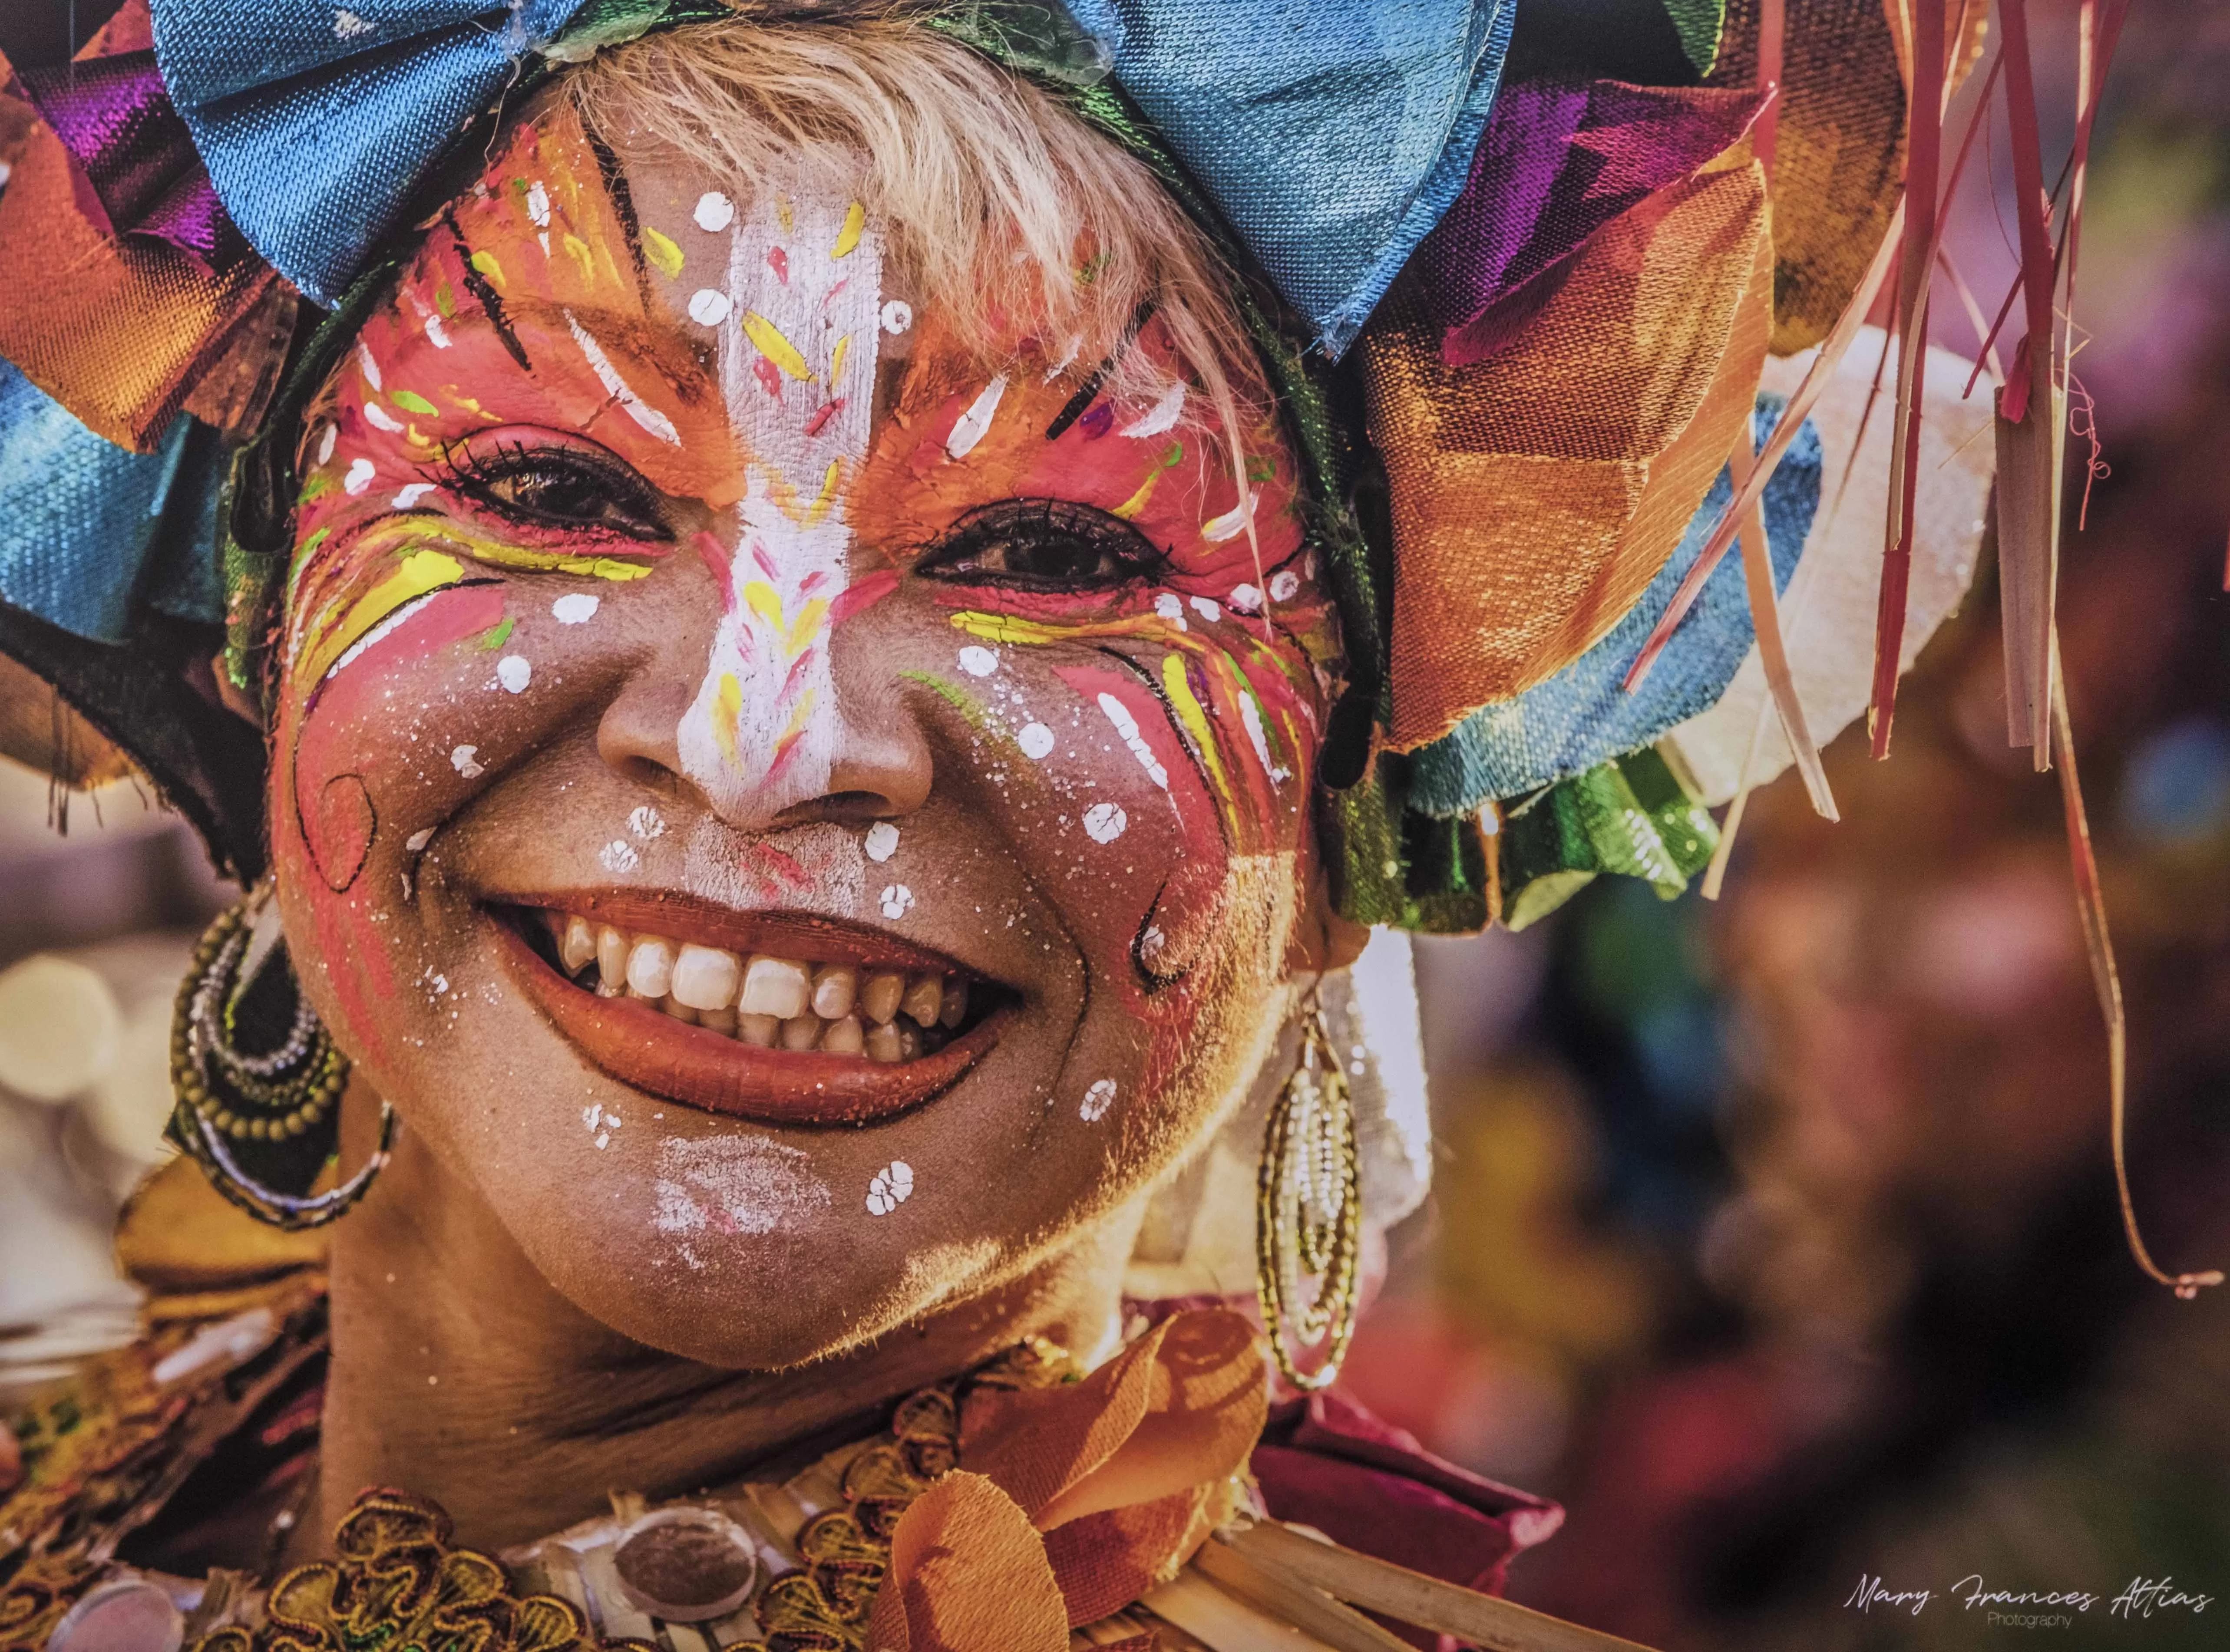 Centro Cultural Banreservas expondrá magia y arte del carnaval dominicano